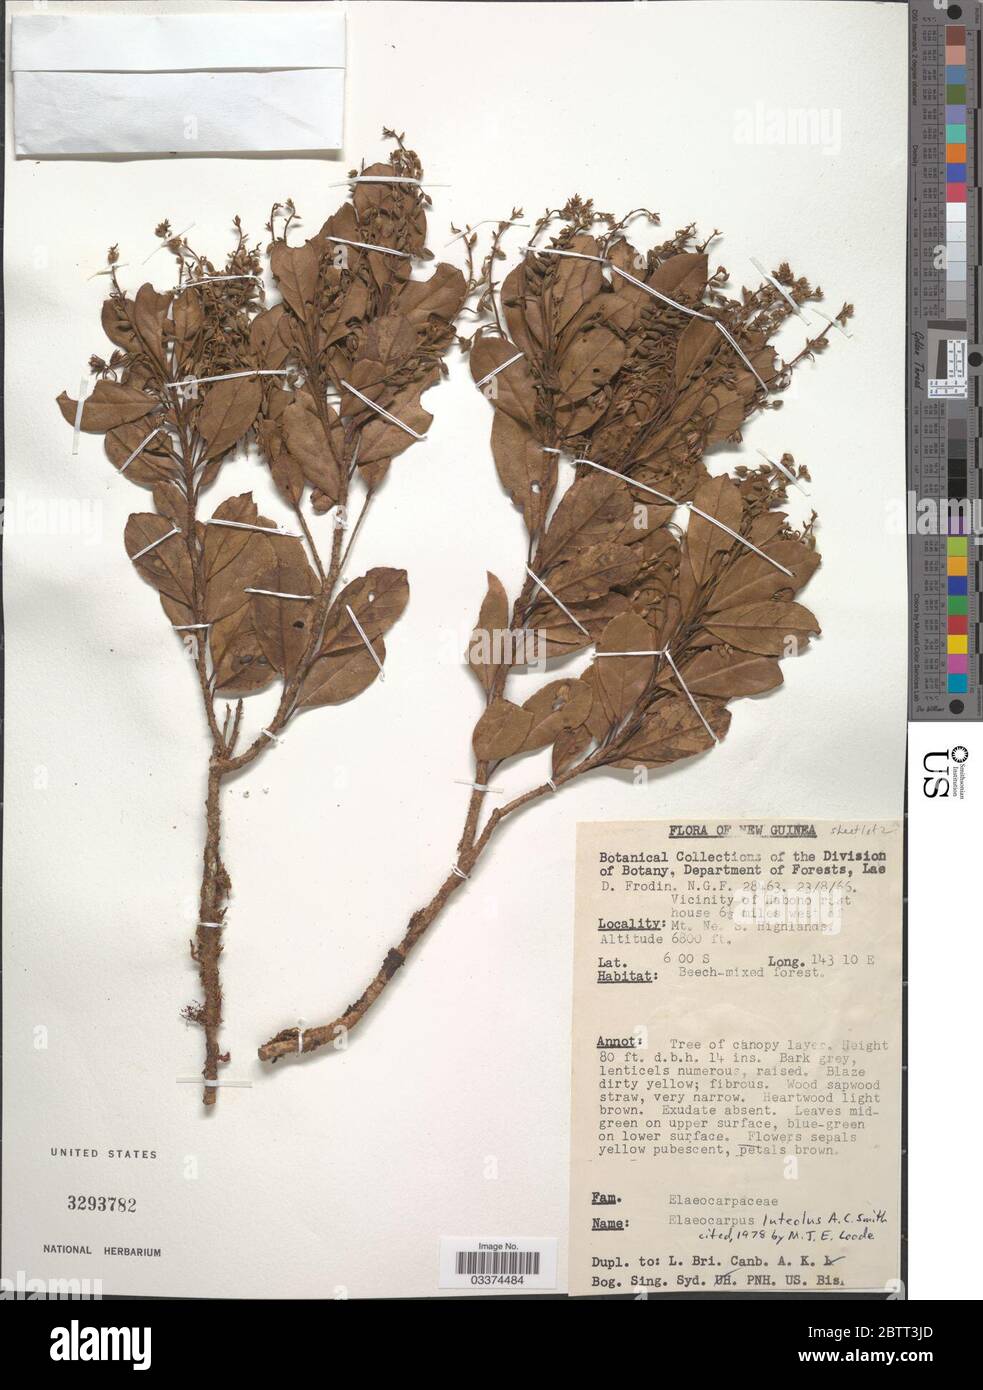 Elaeocarpus luteolus Koord Valeton. Stock Photo